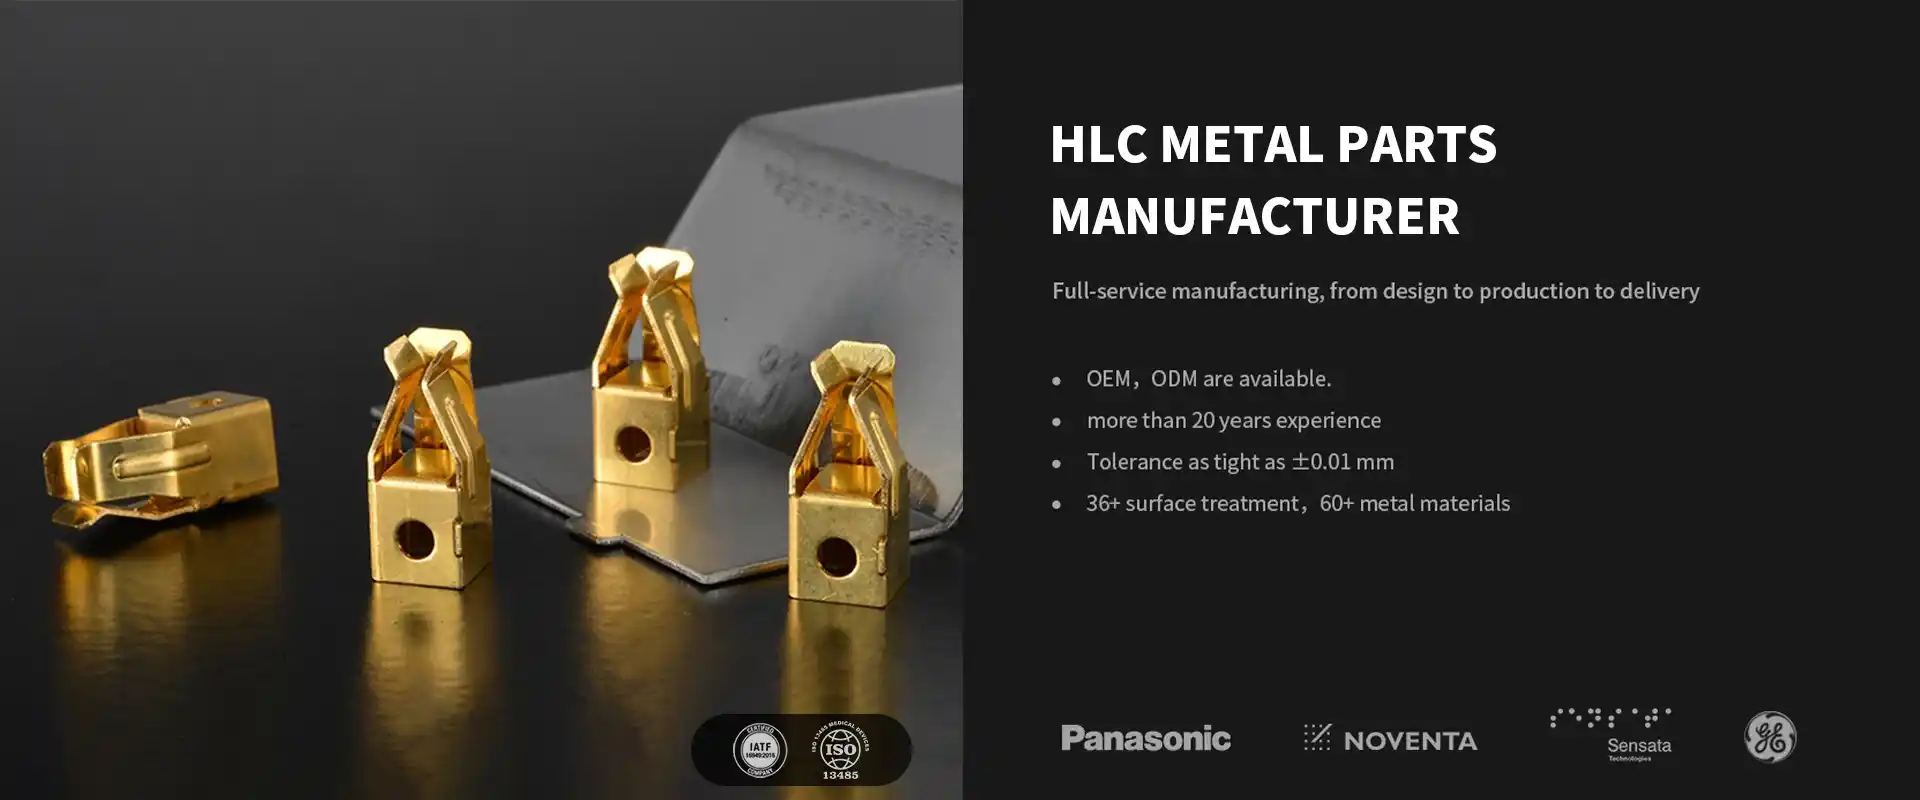 HLC Metal Parts Manufacturer